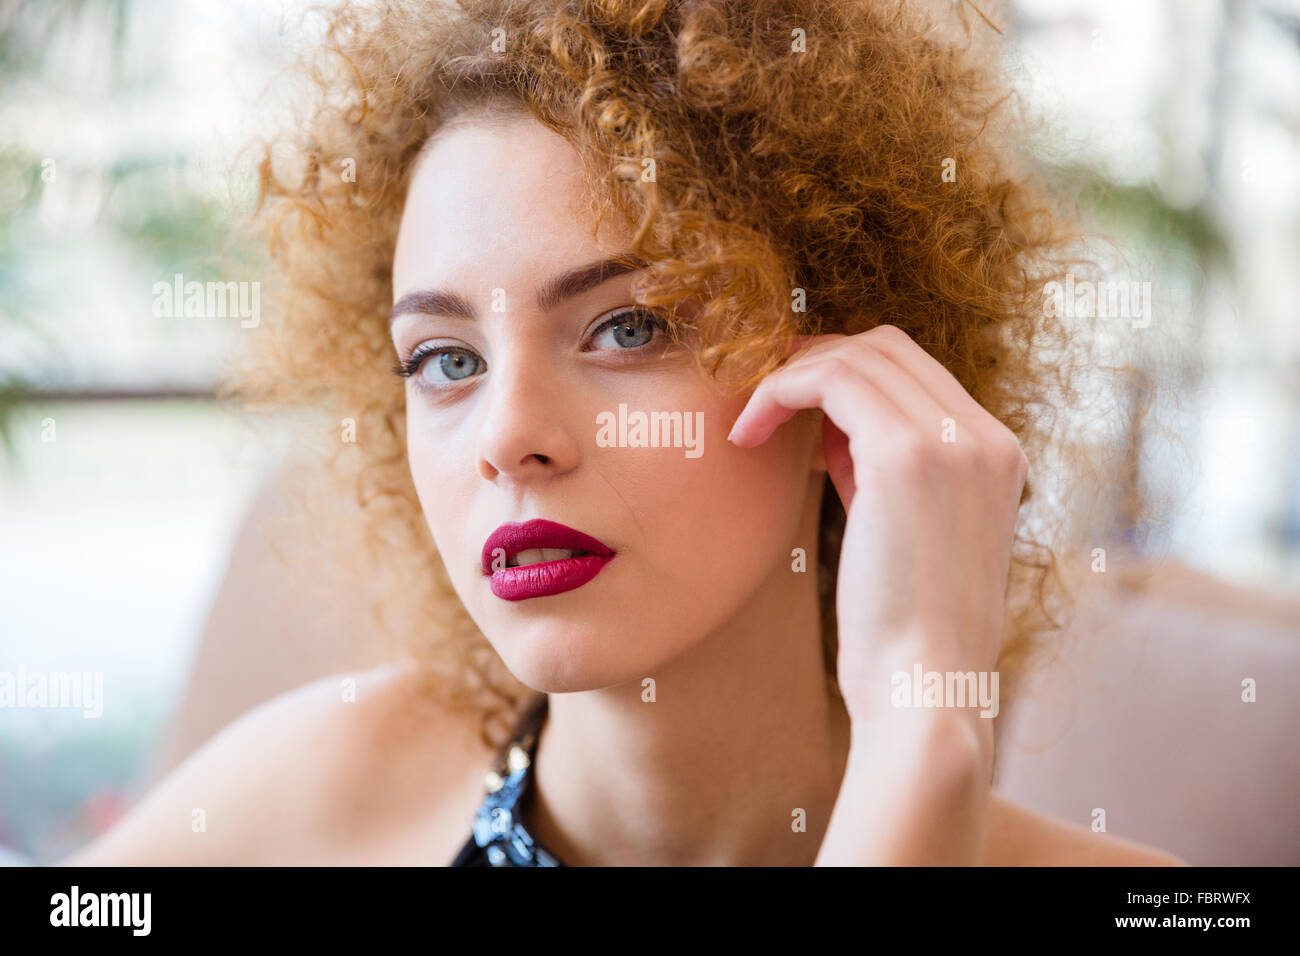 Closeup portrait d'une belle femme rousse avec des cheveux bouclés looking at camera Banque D'Images